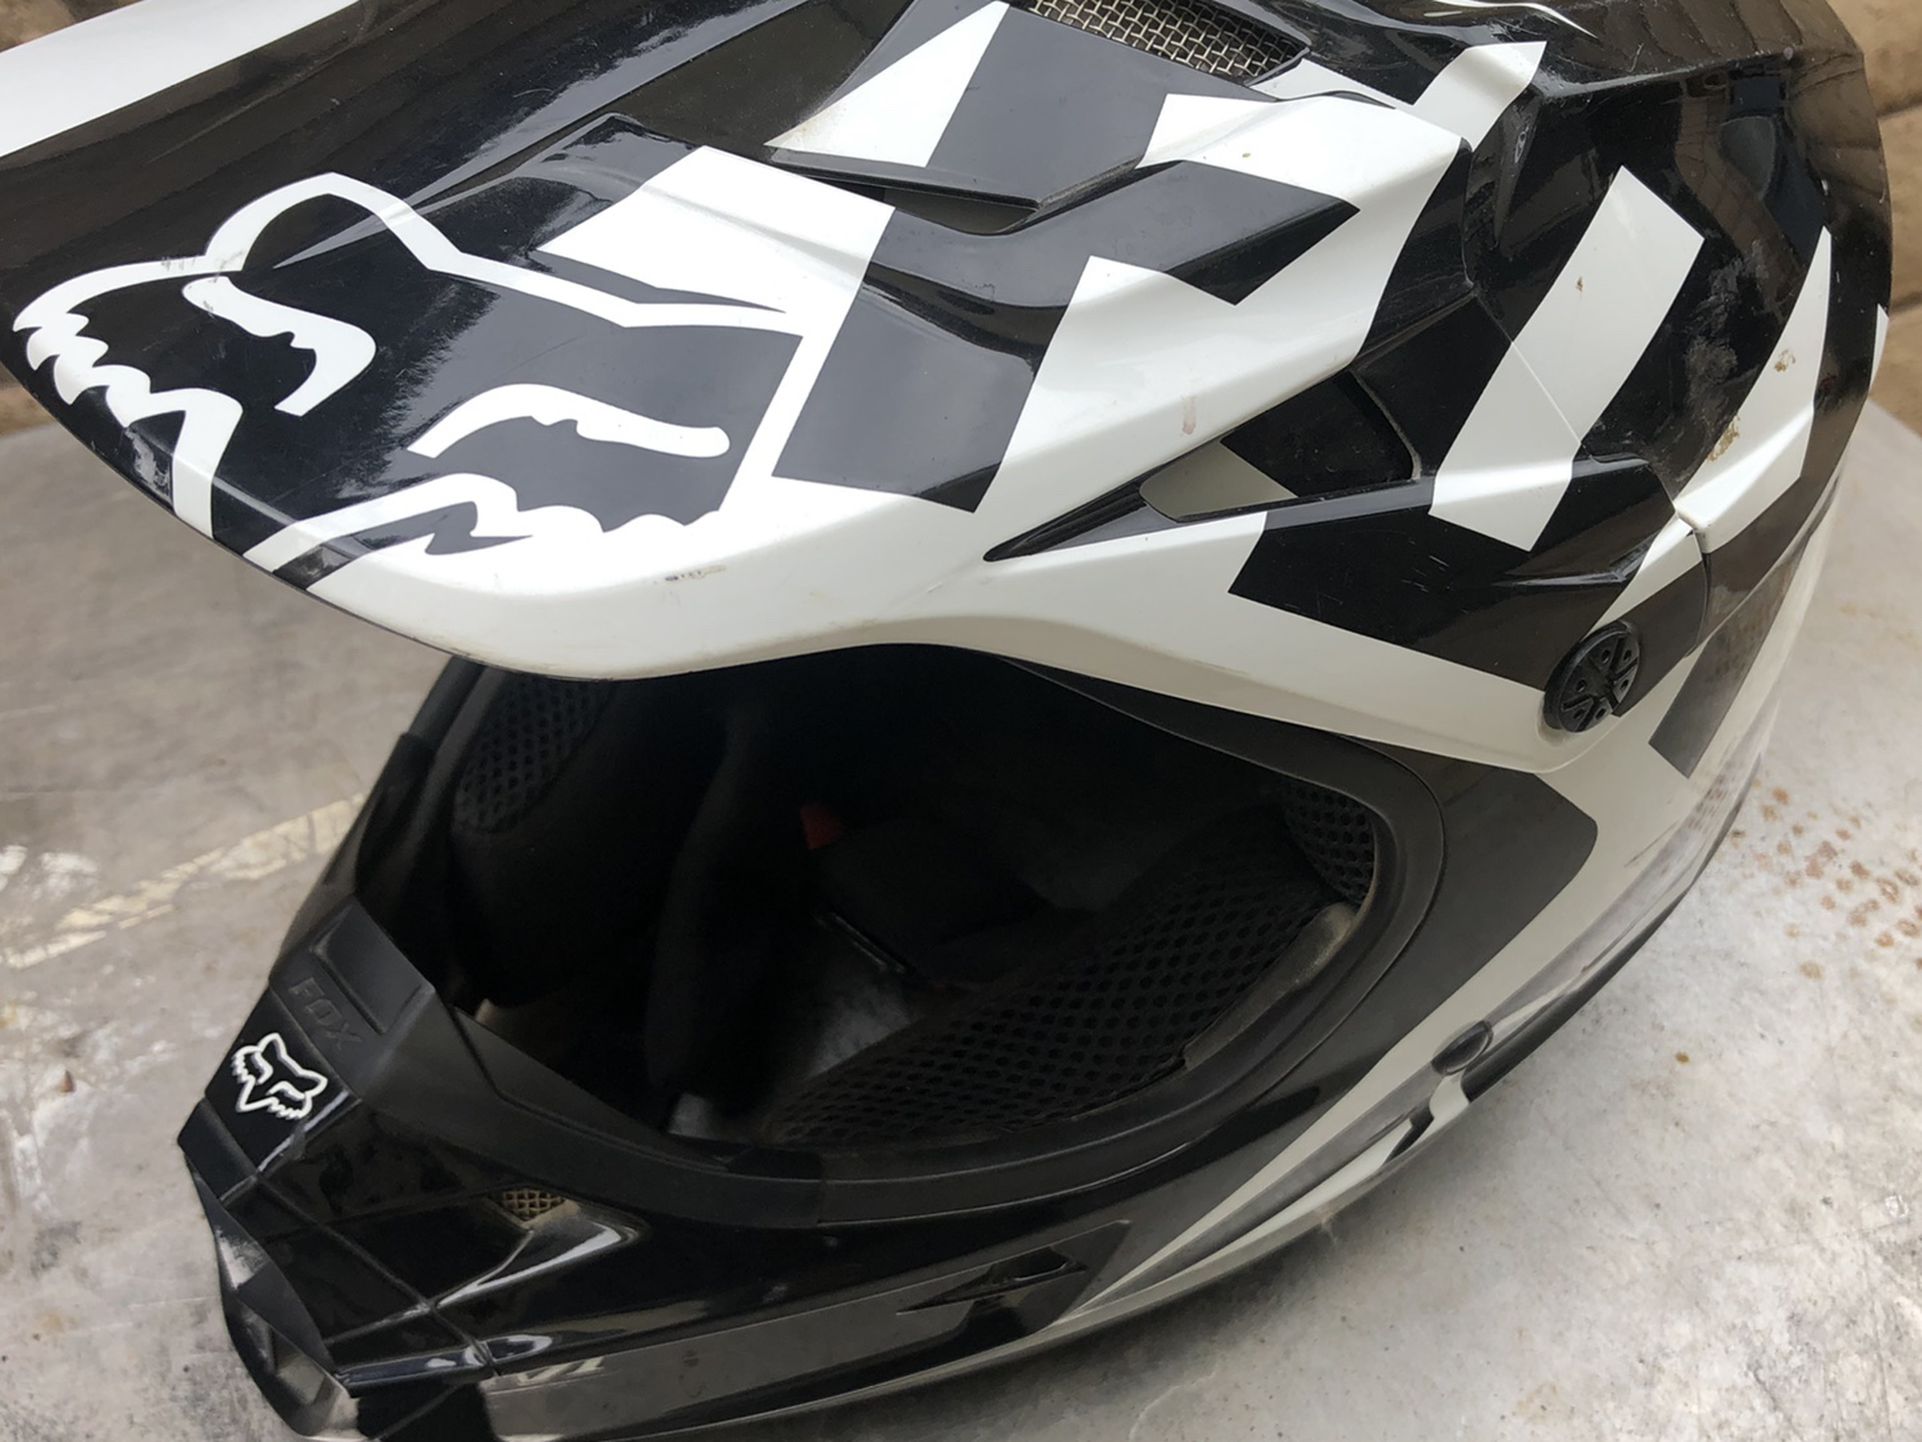 Fox Motocross Dirt Bike Helmet Size S